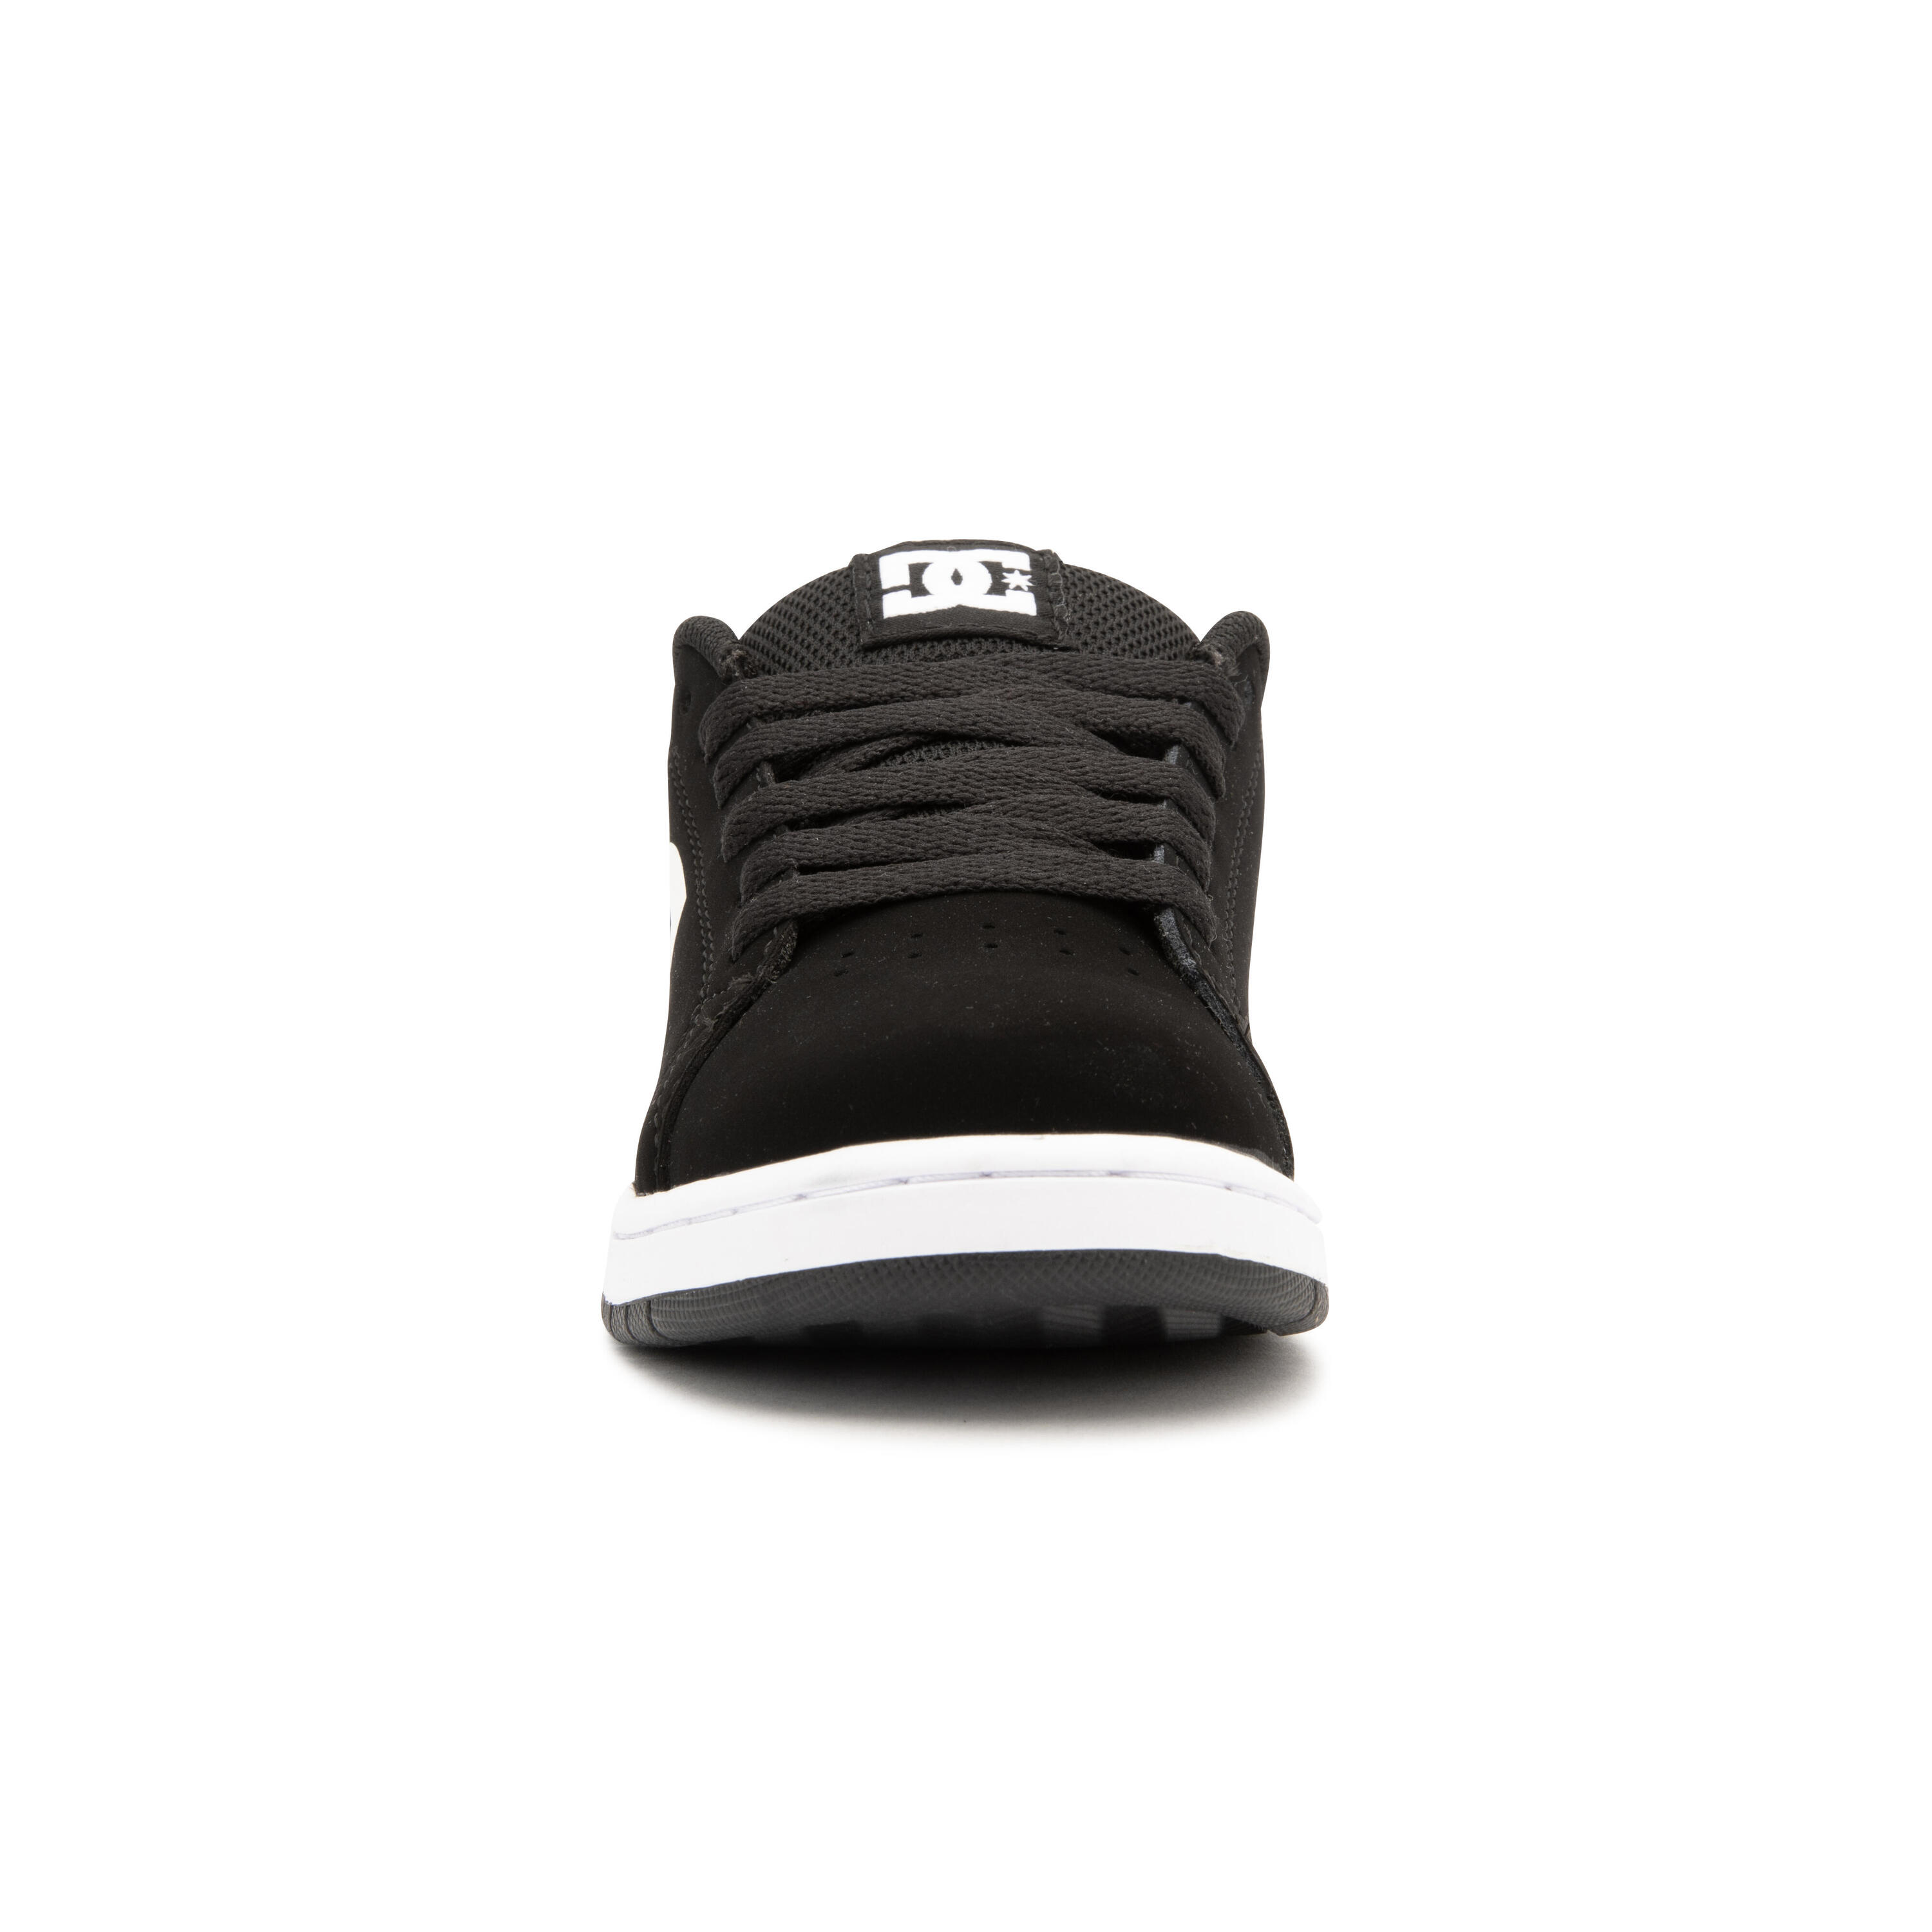 Kids' Skateboarding Shoes Gaveler - Black/White 4/11